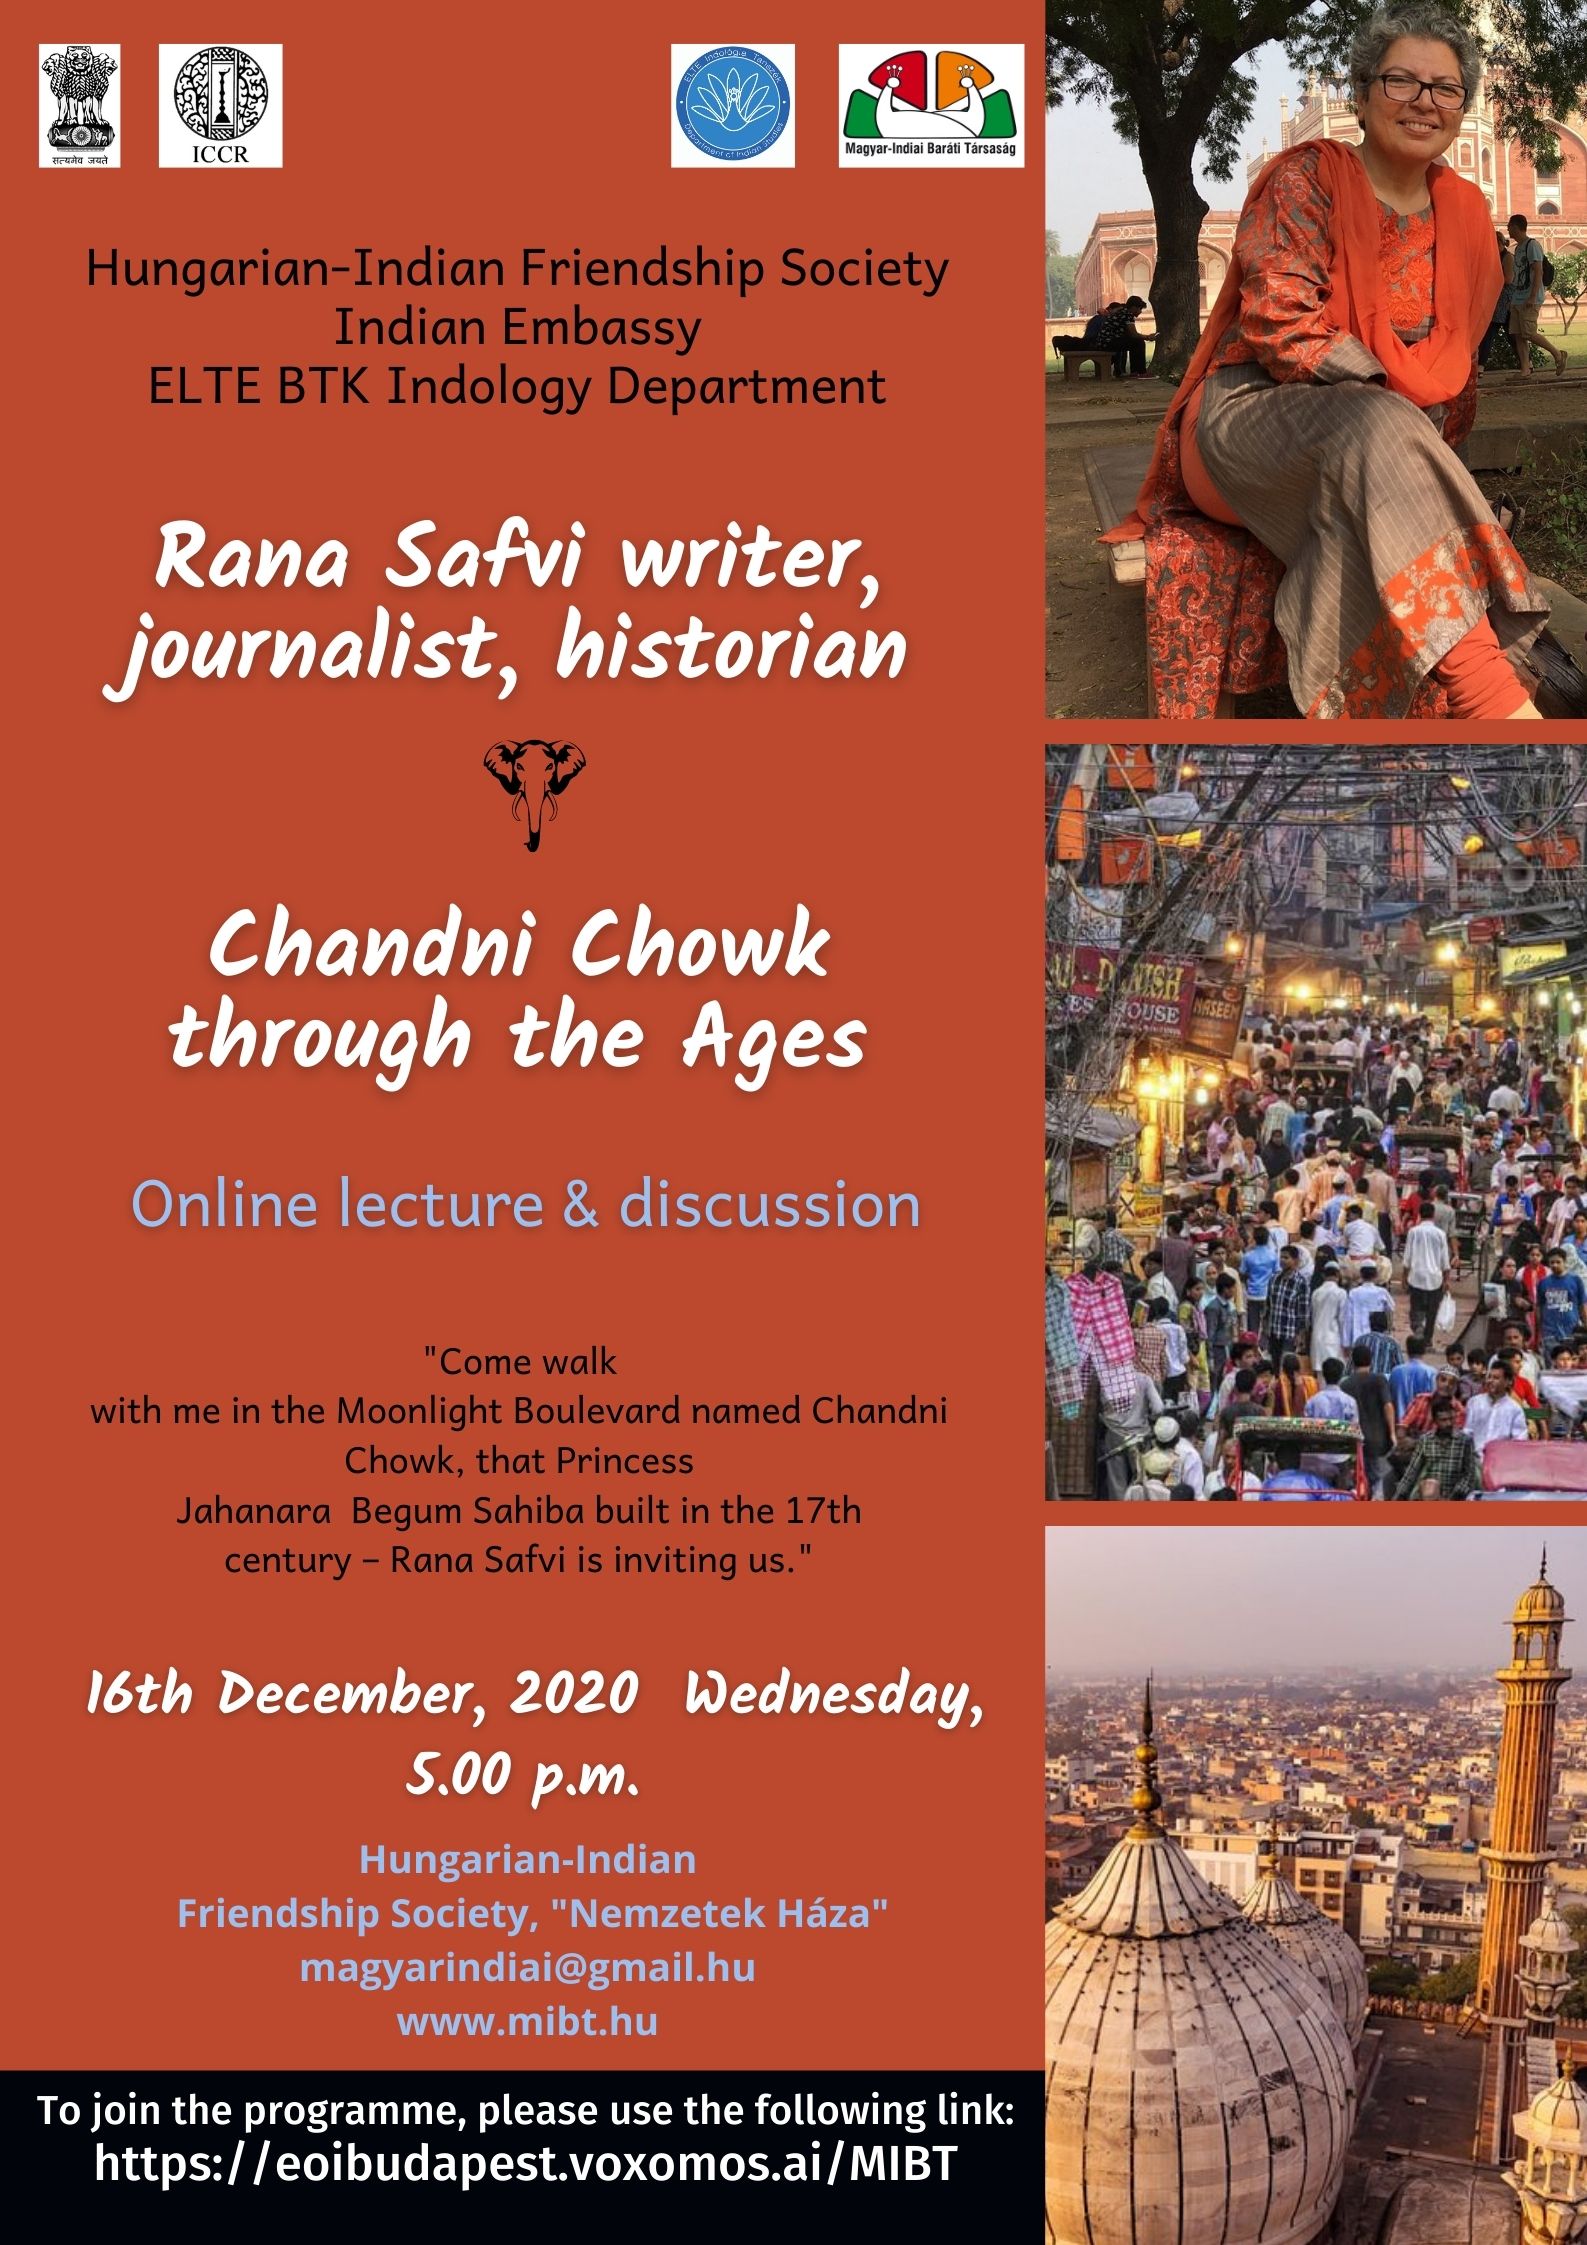 Chandni Chowk through the Ages by Rana Safvi writer, journalist, historian 